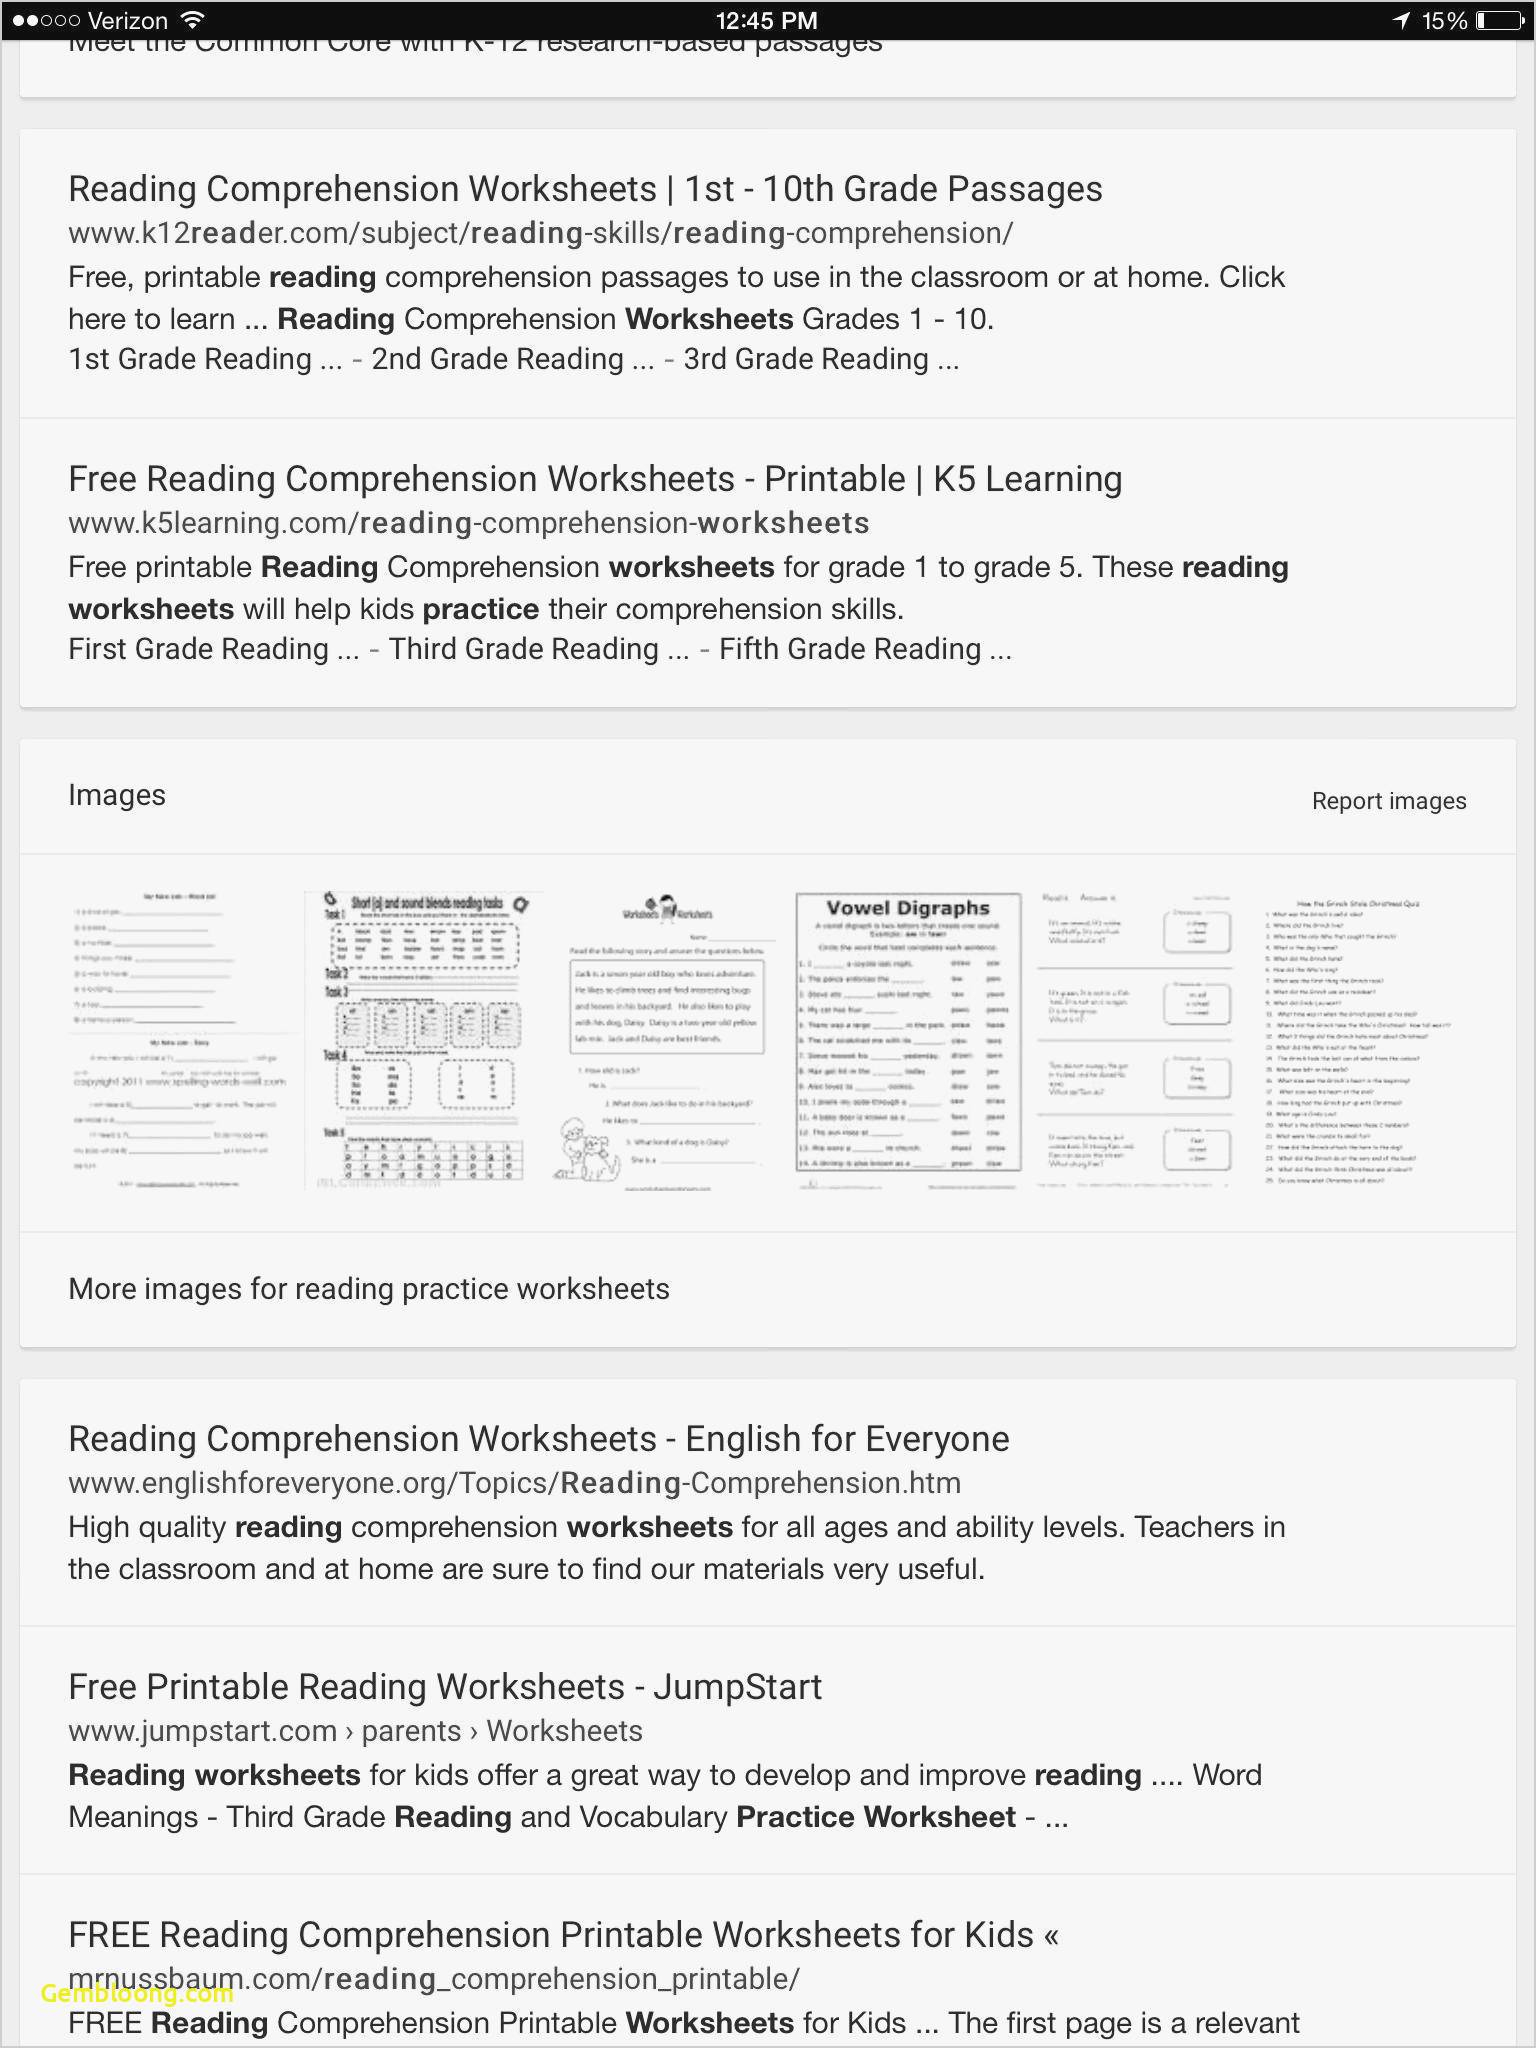 Reading Comprehension Worksheets For 1St Grade - Cramerforcongress | Third Grade Reading Worksheets Free Printable